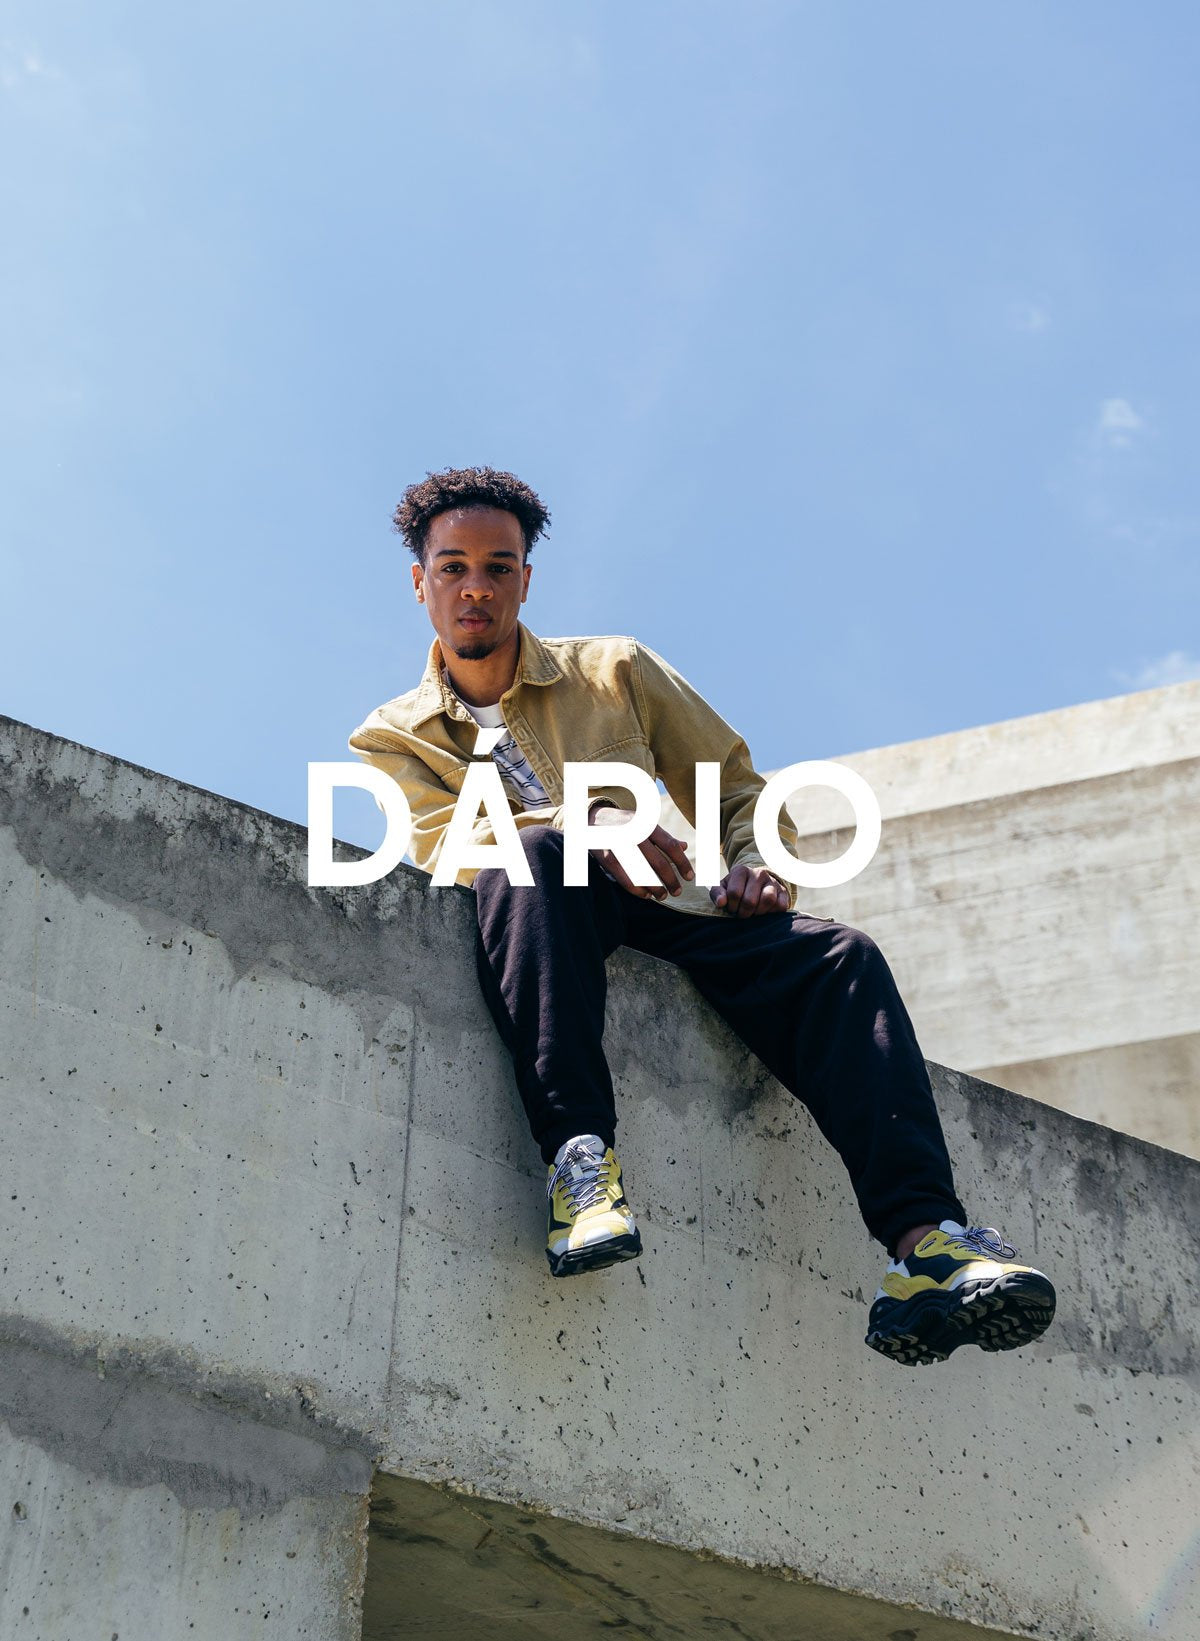 Dário seduto su un muro indossando Diverge sneakers, promuovendo l'impatto sociale e le scarpe personalizzate attraverso il progetto Imagine.